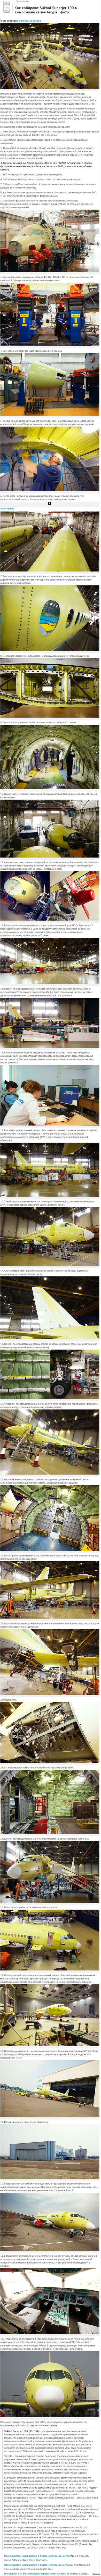   Sukhoi Superjet 100  -- :  